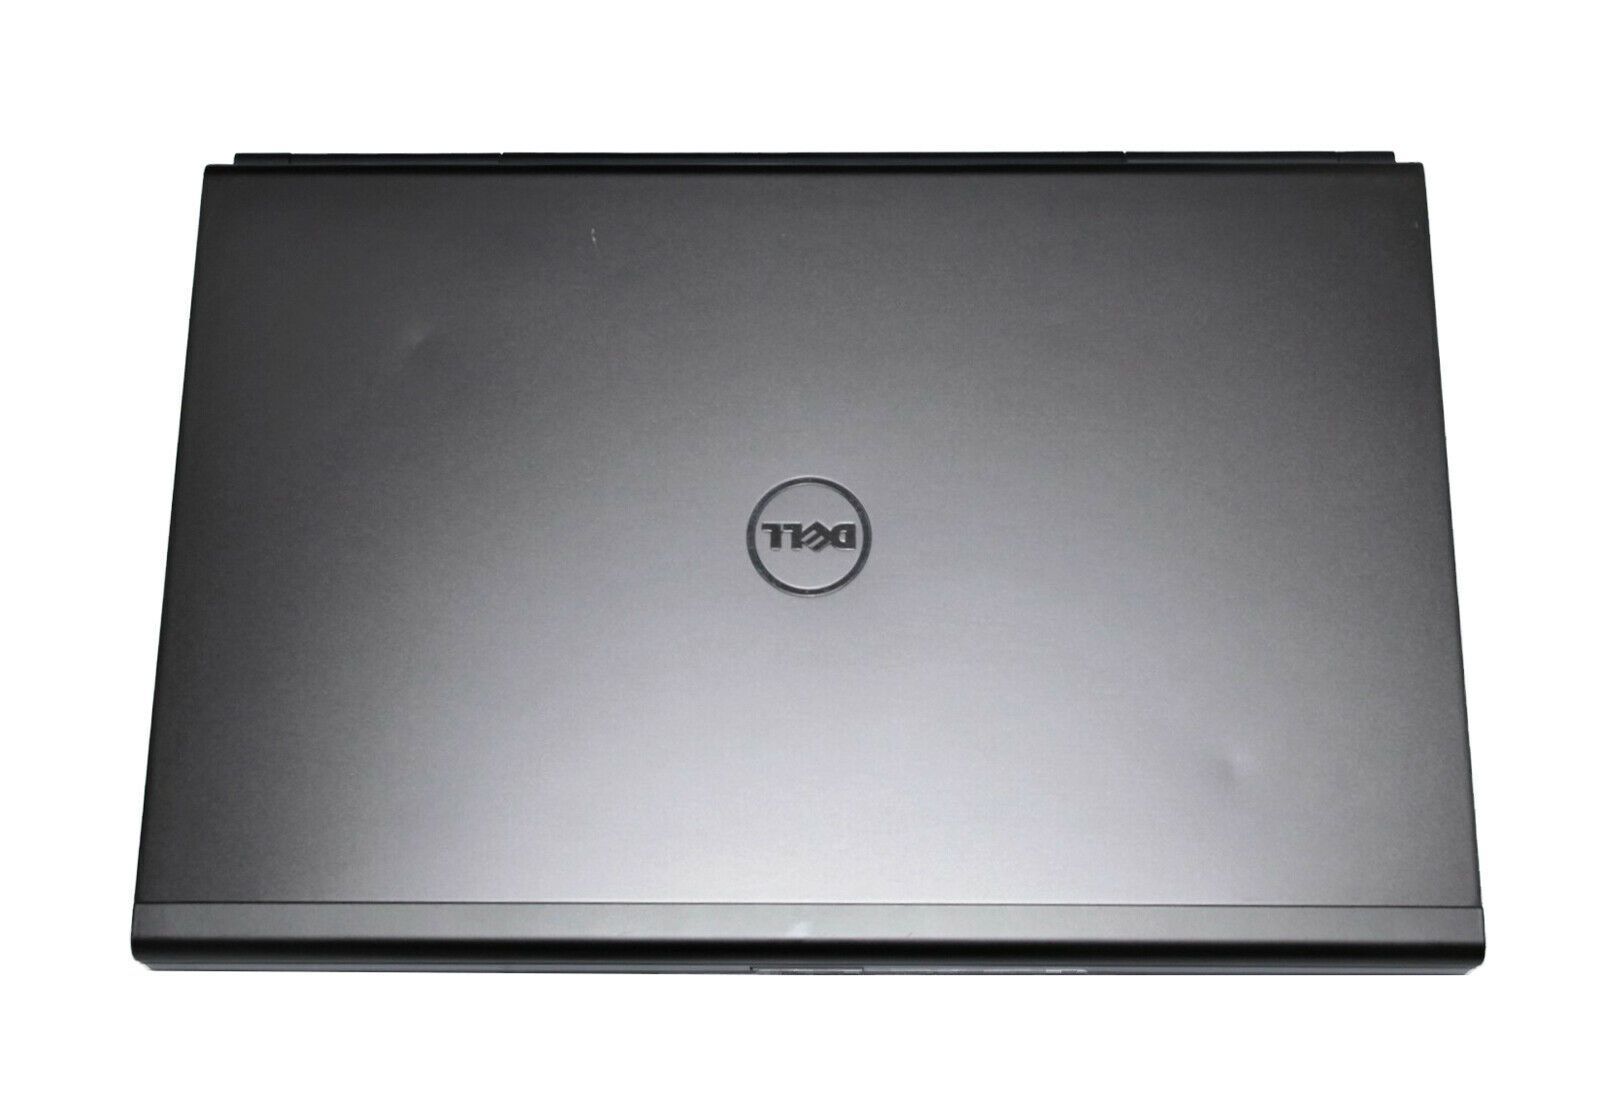 Dell Precision M6700 CAD Laptop: Core i7, Quadro, 240GB SSD+HDD, VAT, Warranty - CruiseTech